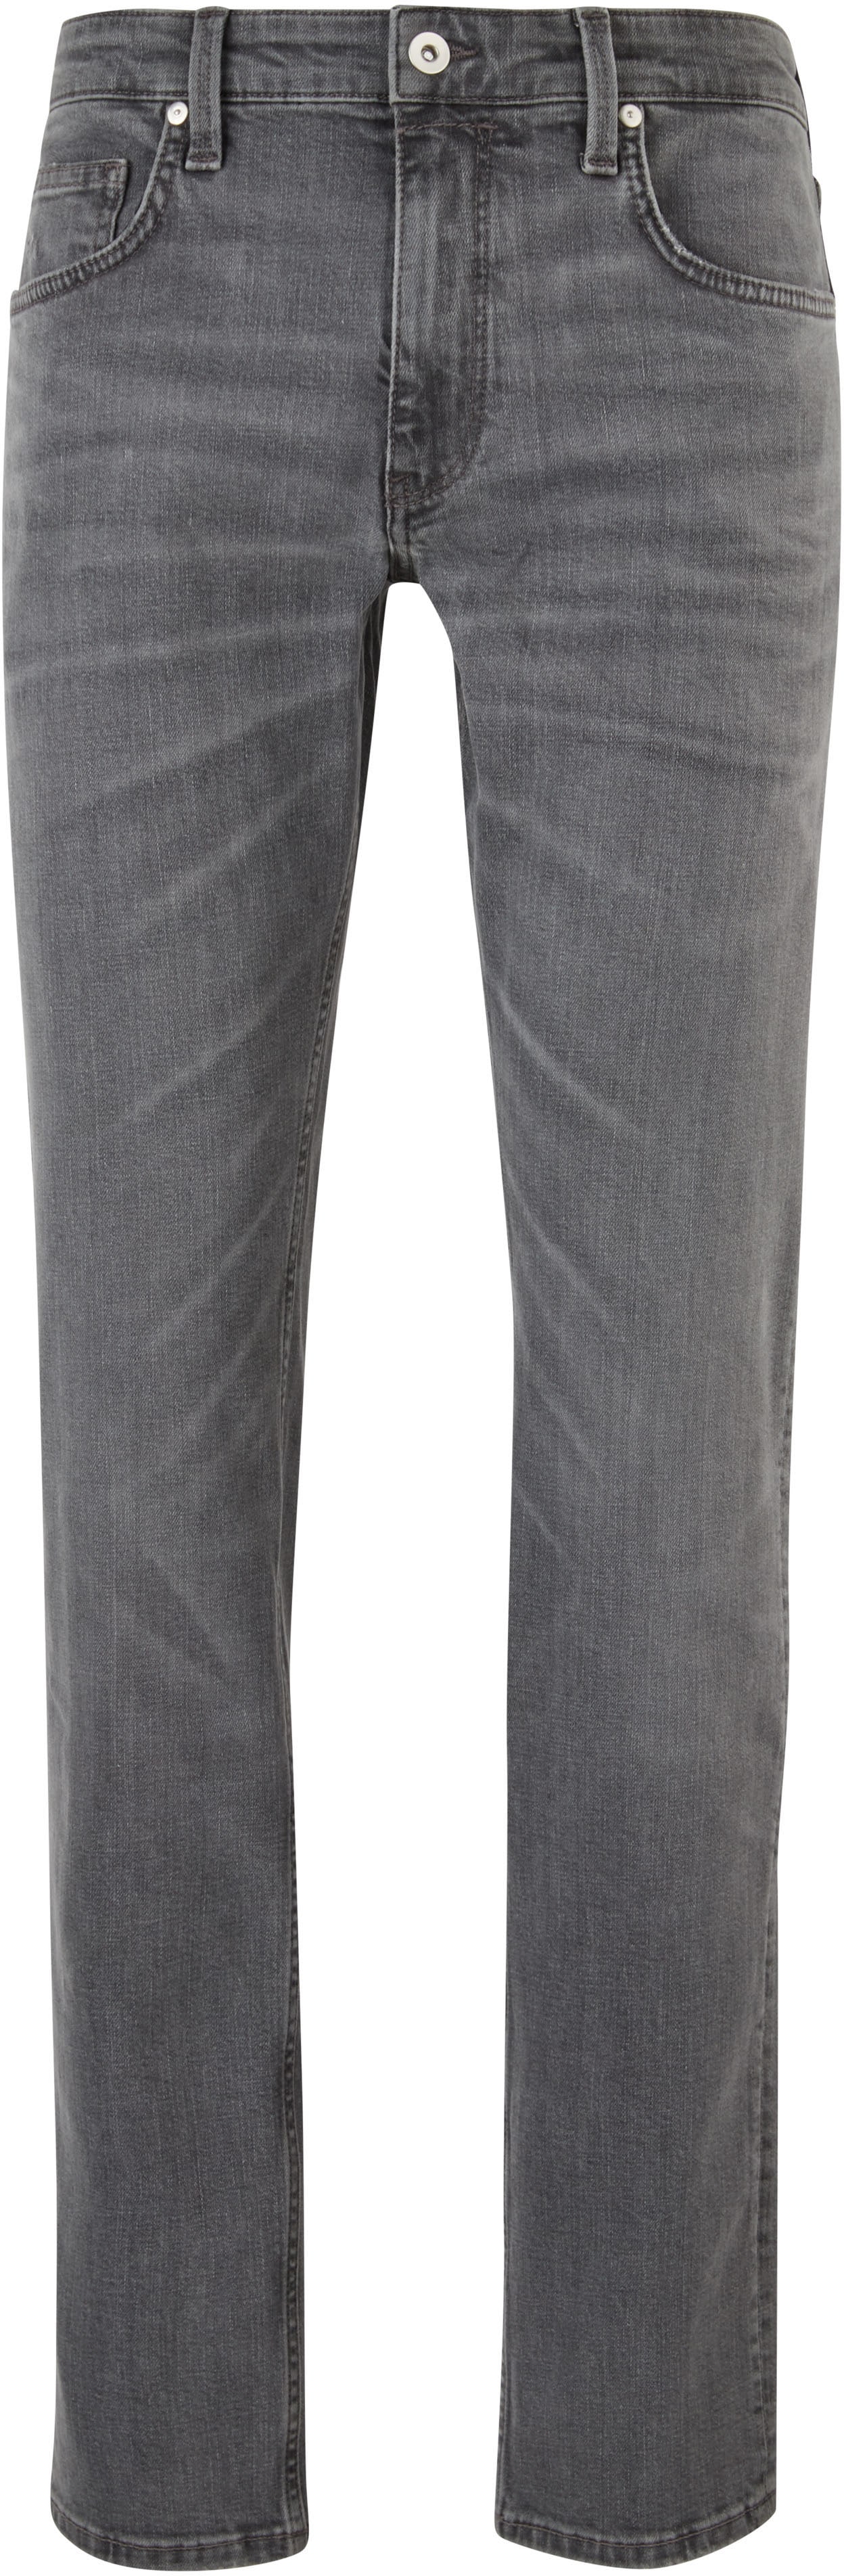 s.Oliver 5-Pocket-Jeans von s.Oliver